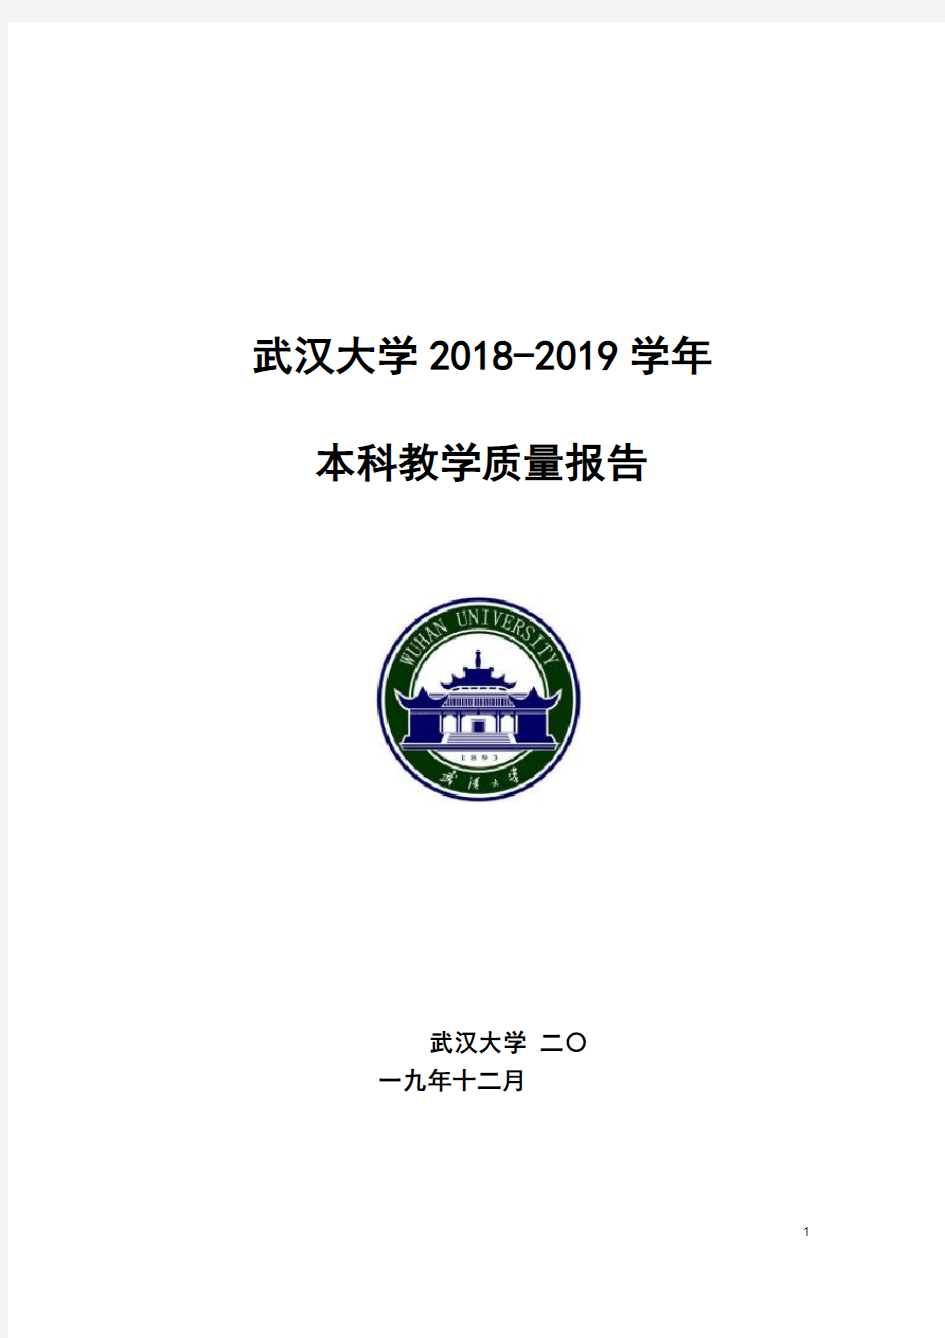 武汉大学 2018-2019 学年本科教学质量报告